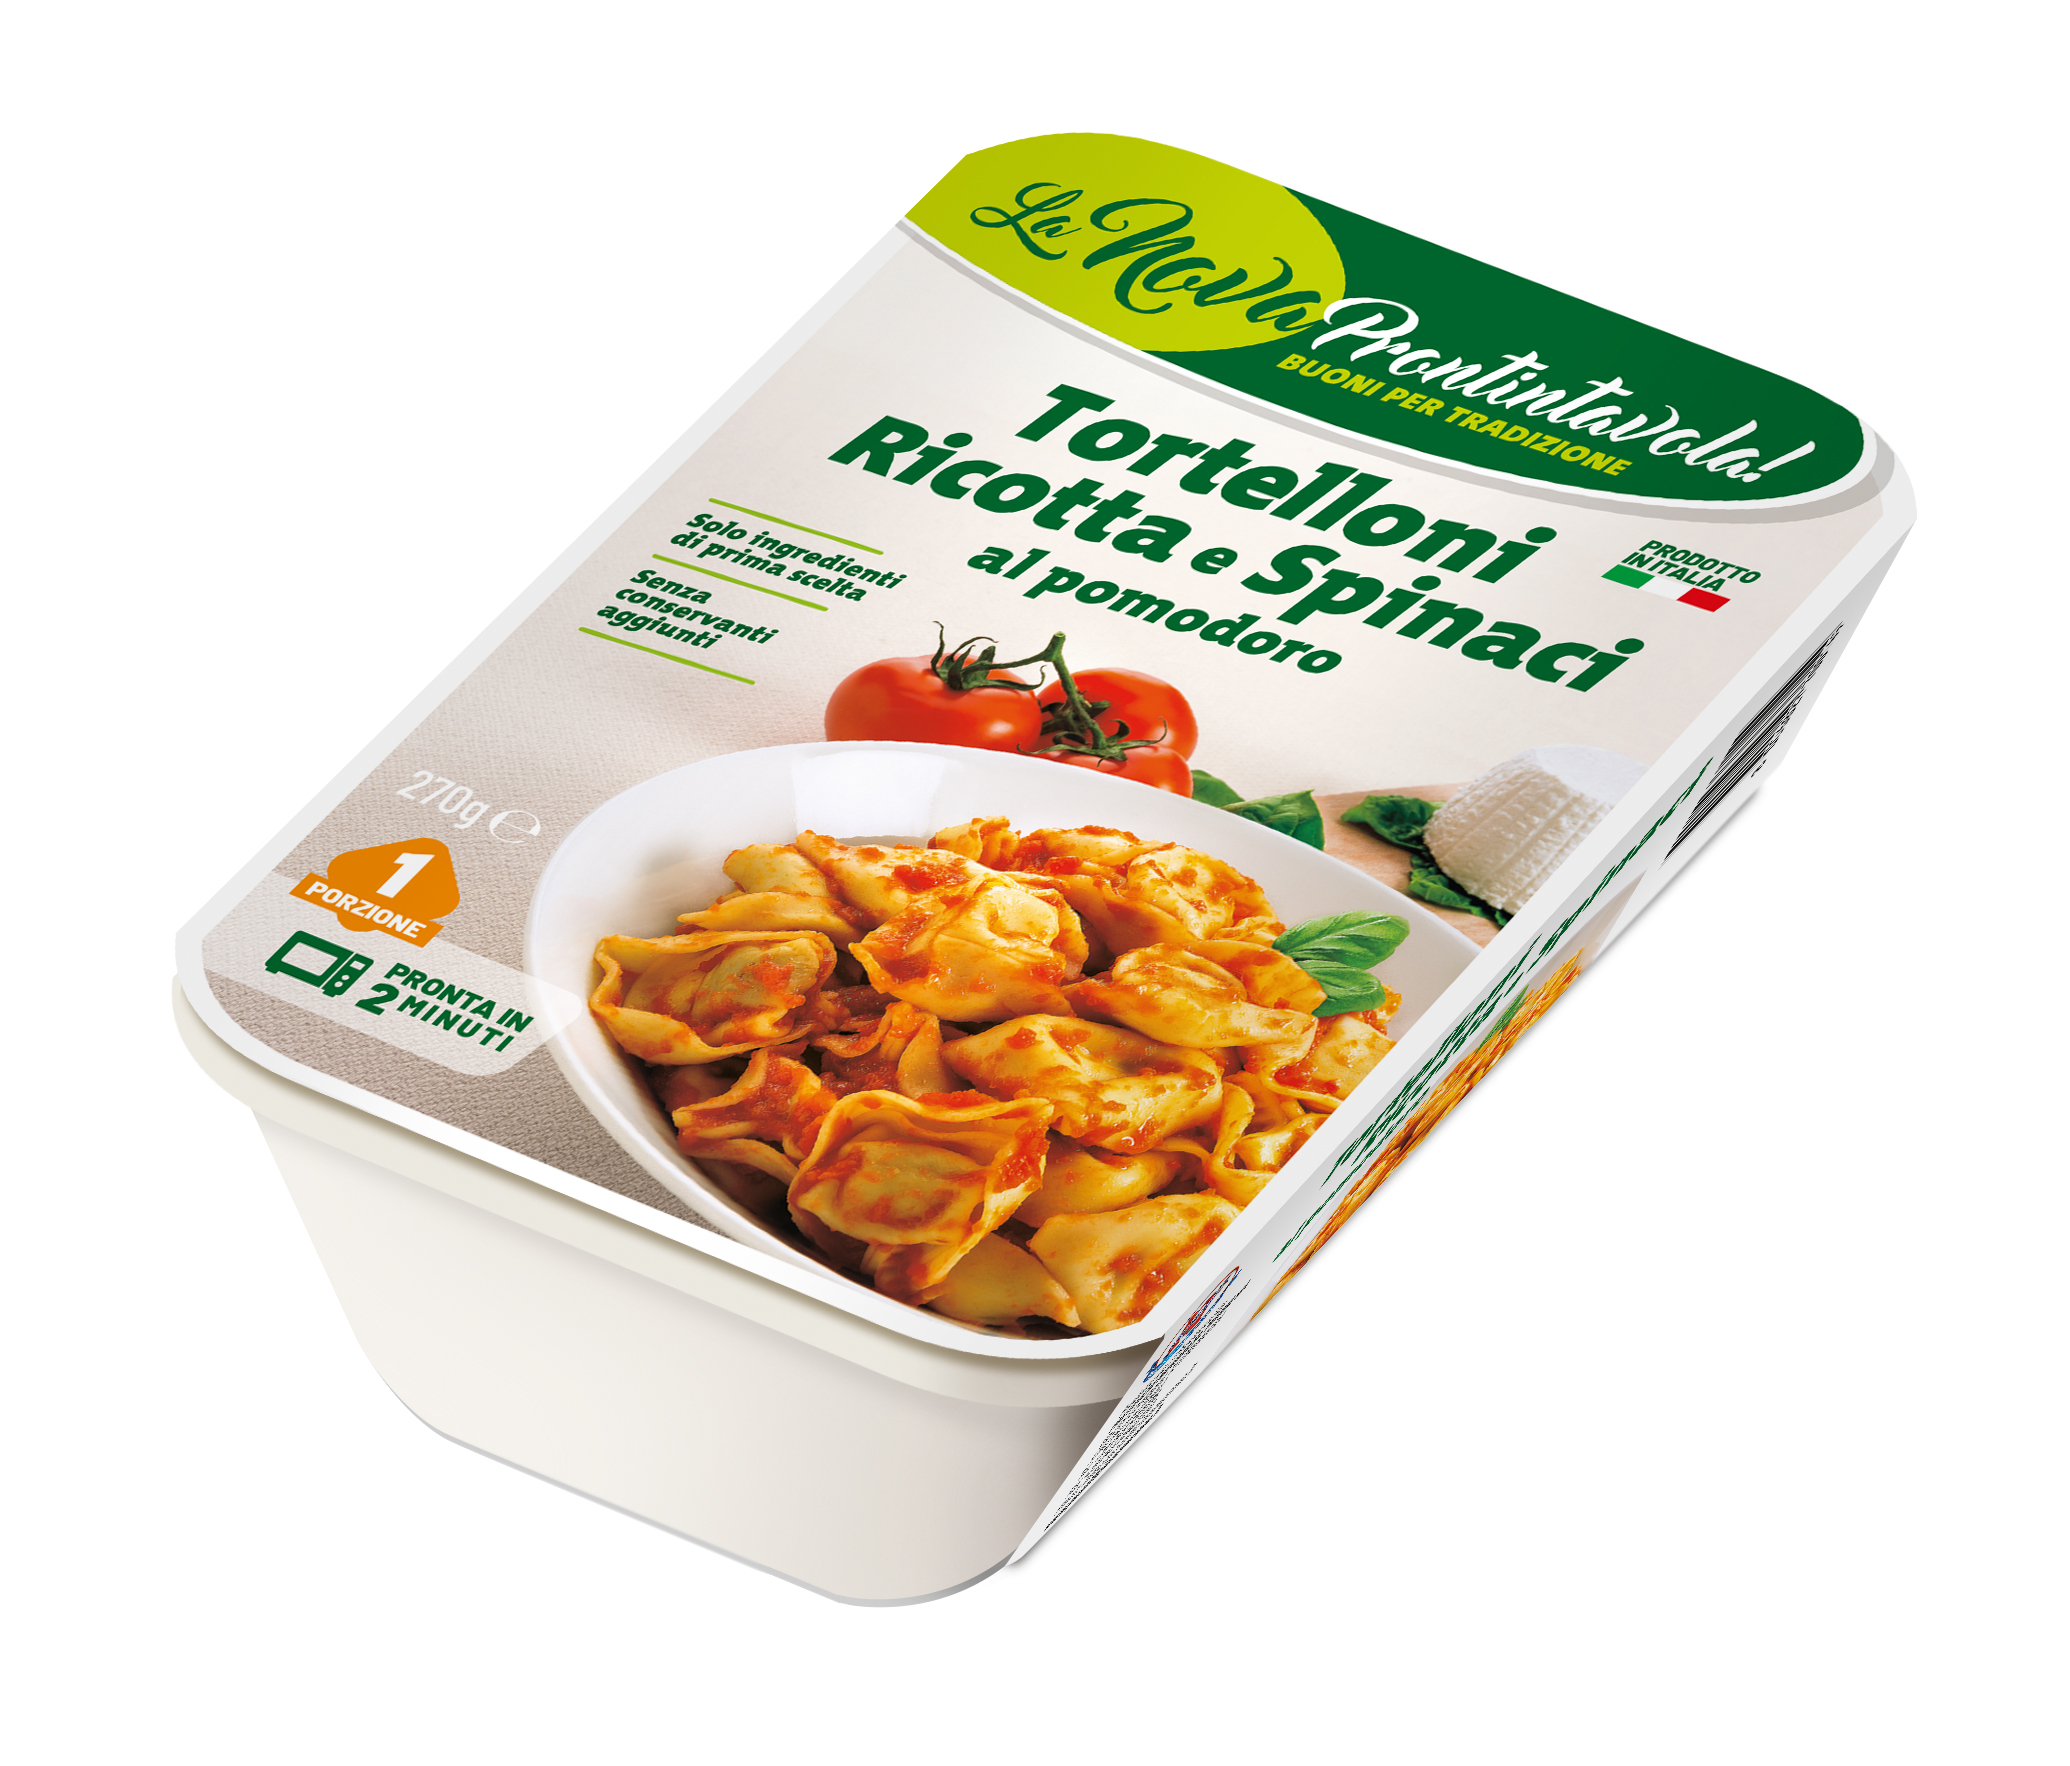 Tortelloni ricotta spinaci <br>al pomodoro